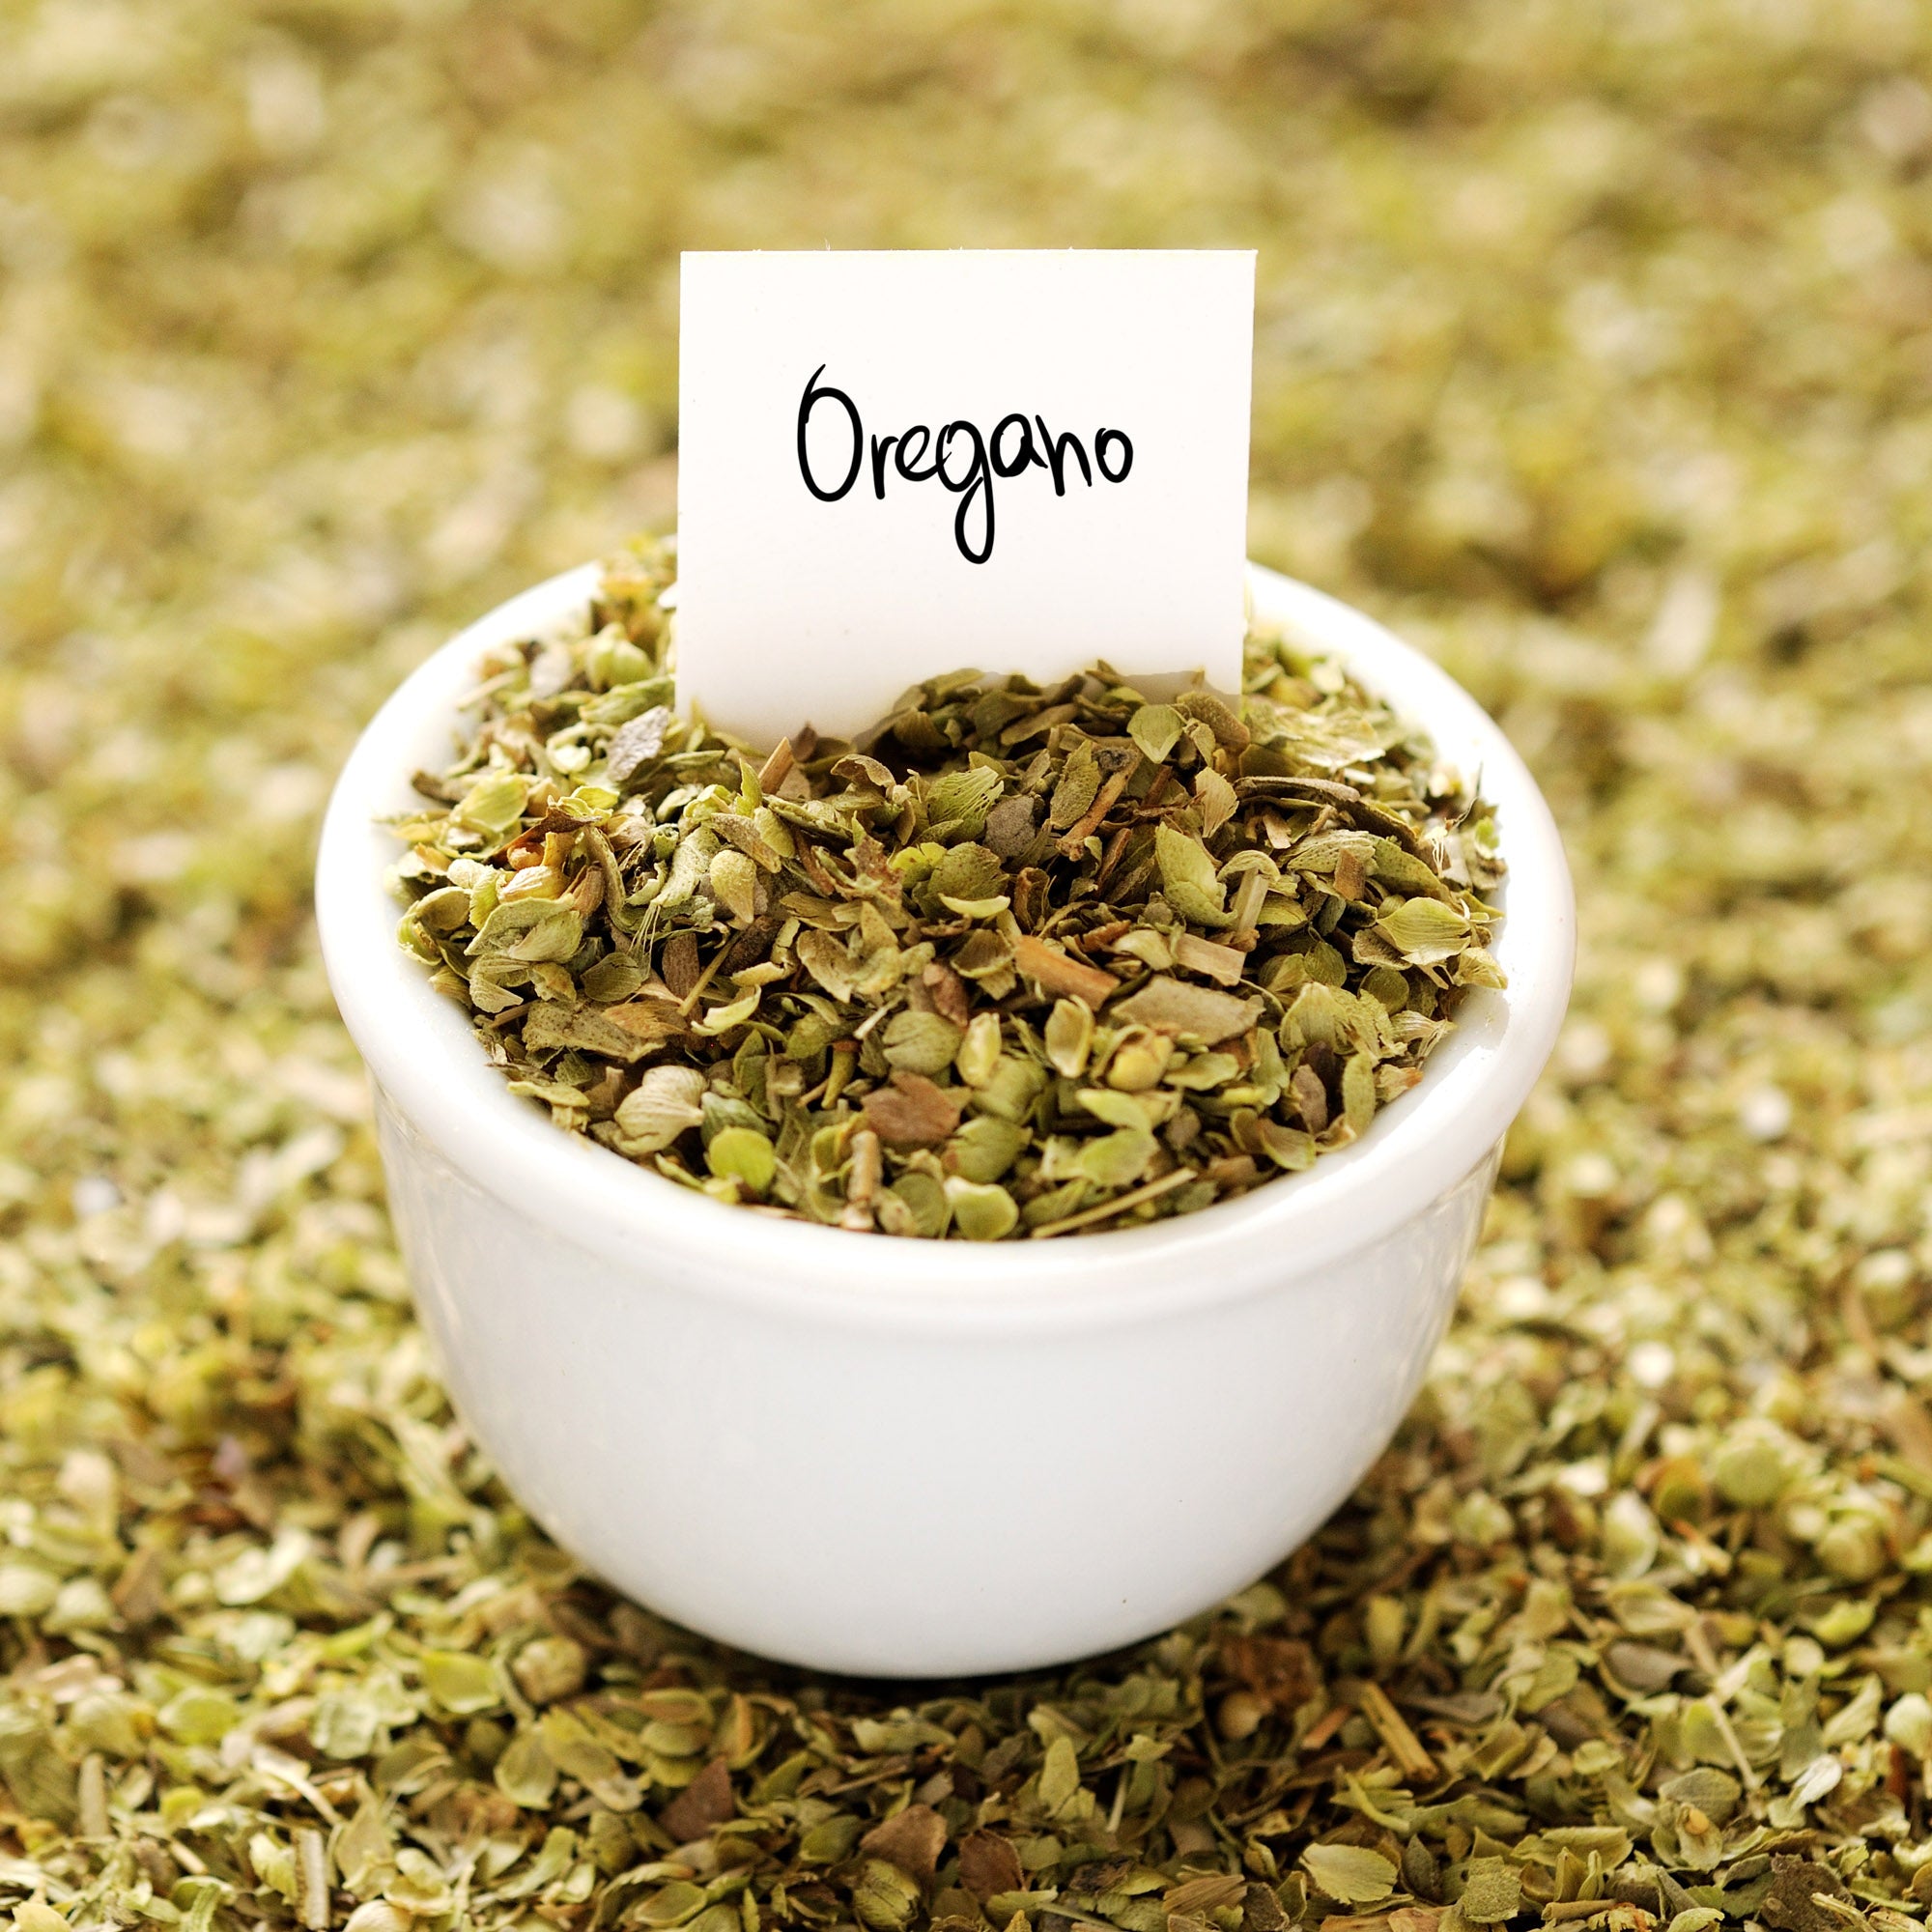 Organic Oregano Leaf - 4 oz French Jar - 5438 – The Spice Lab